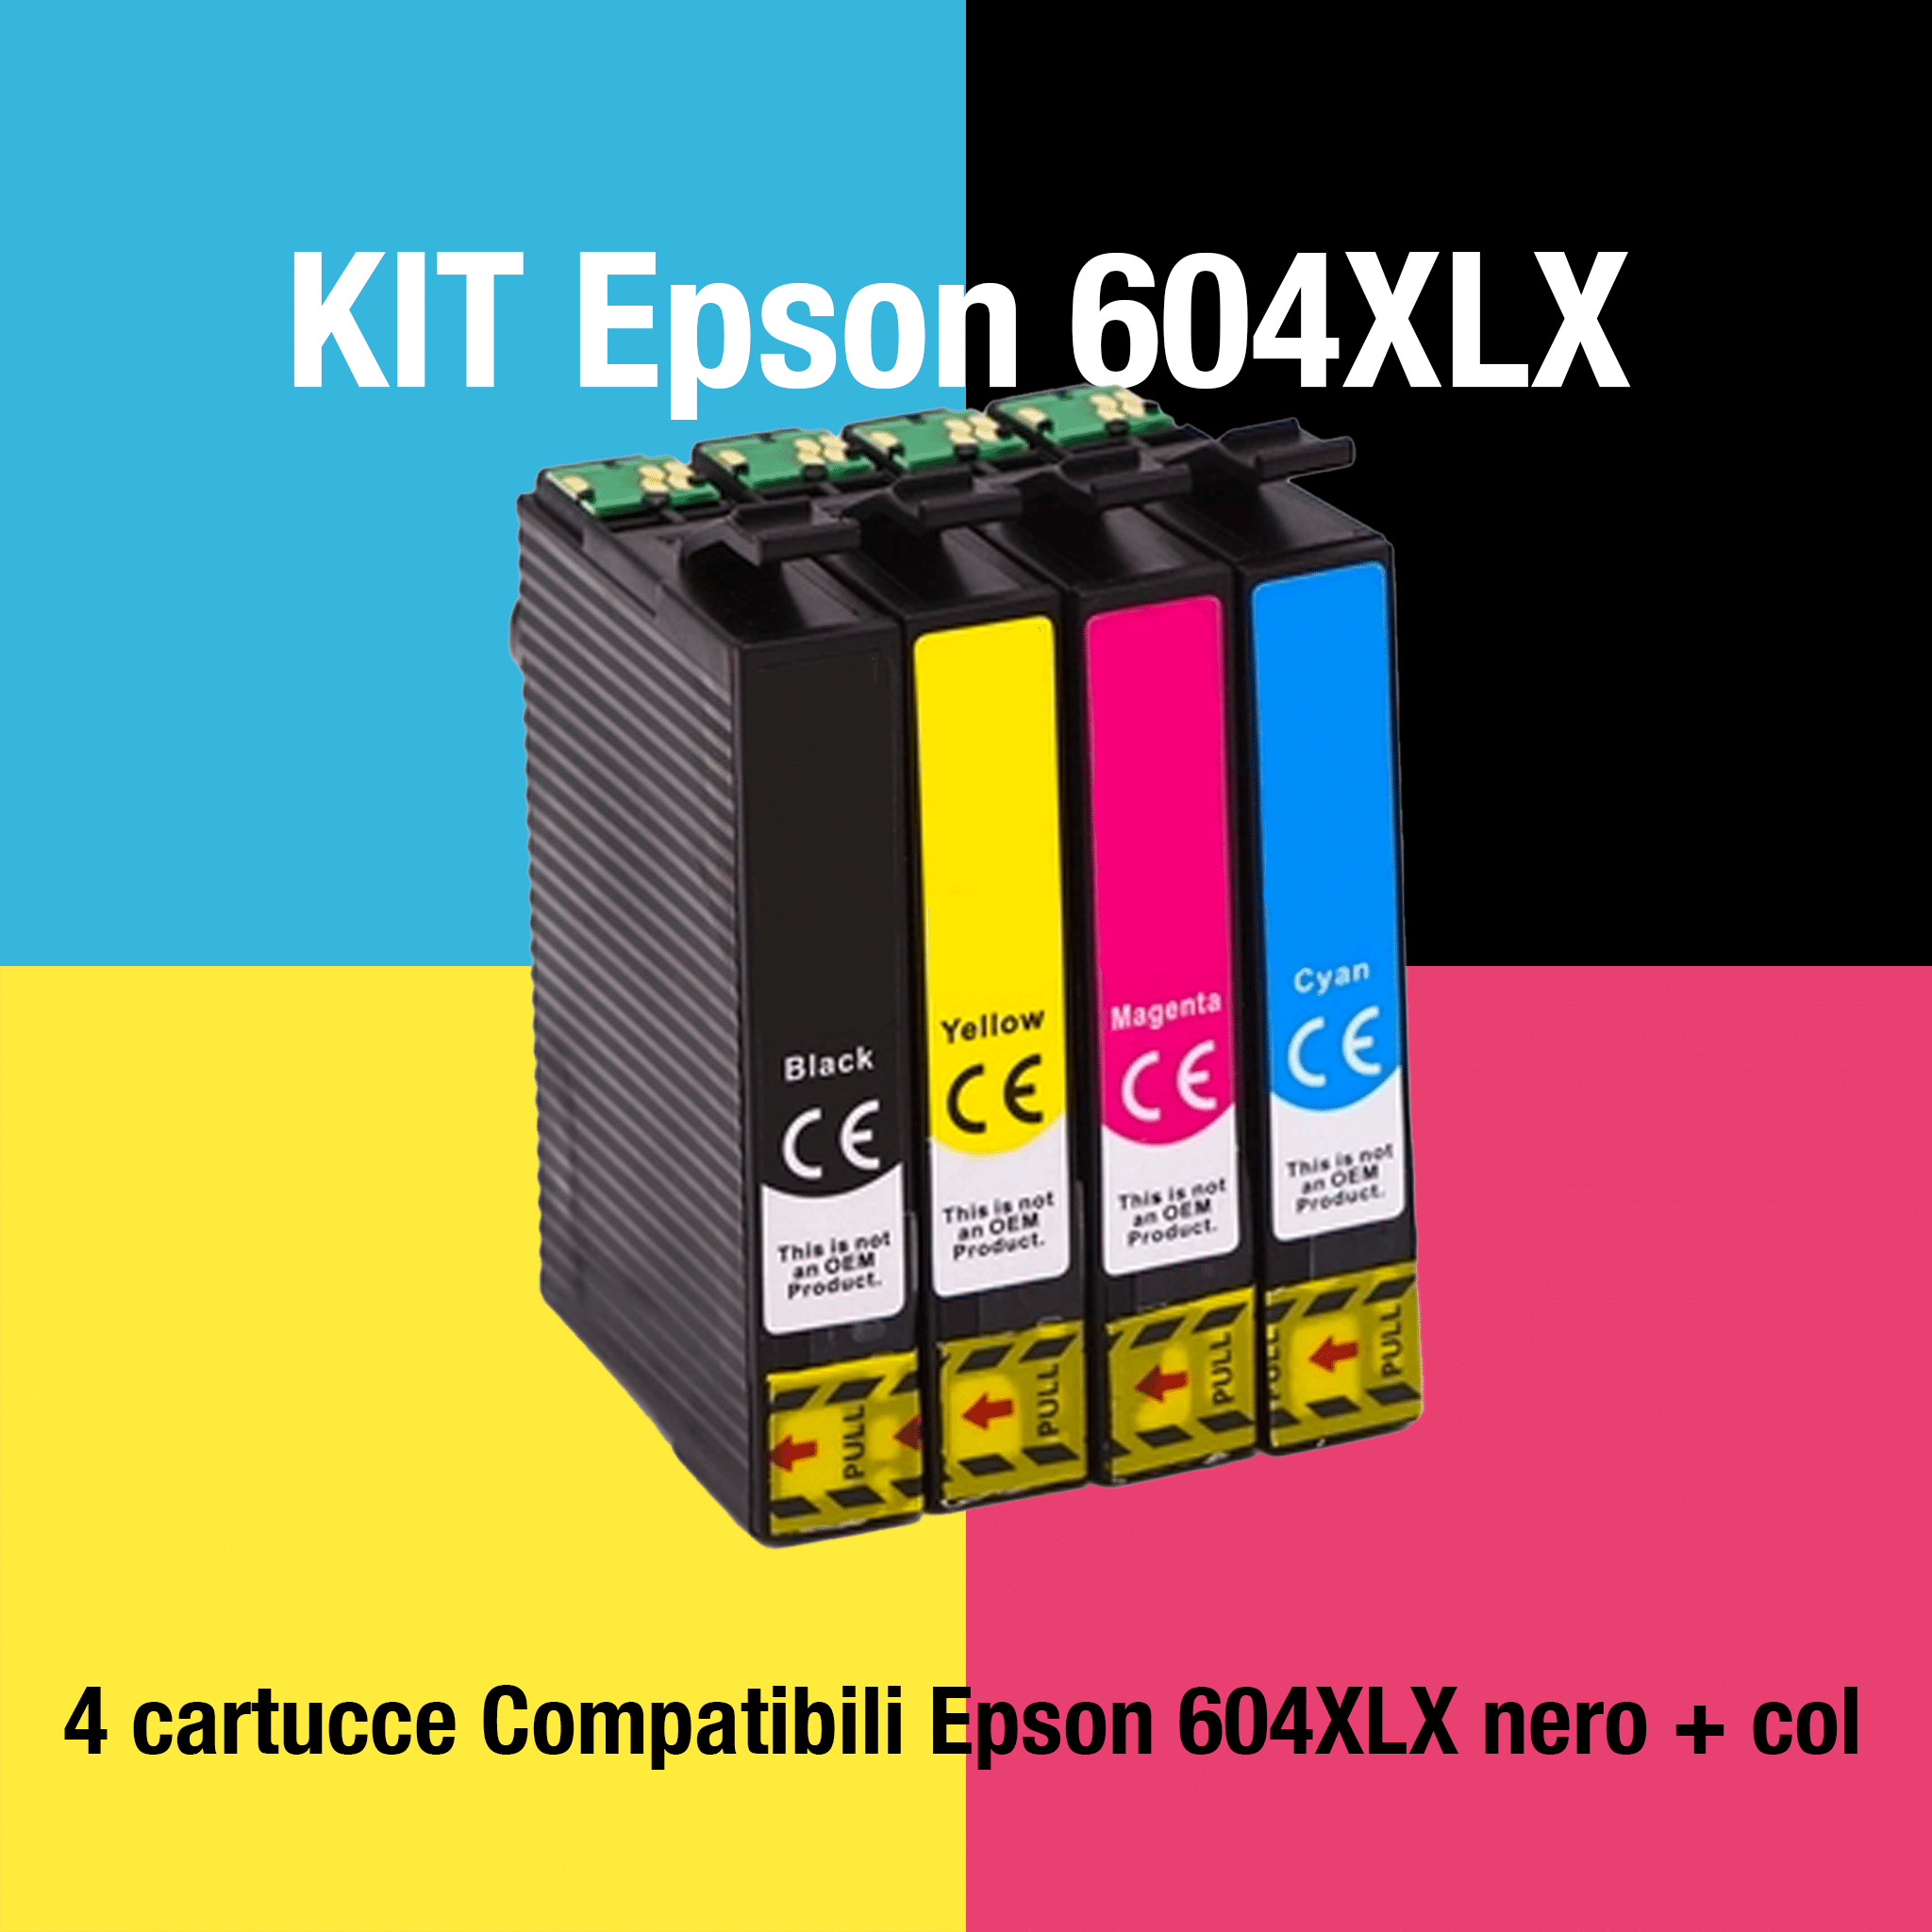 Kit Epson 604XLX